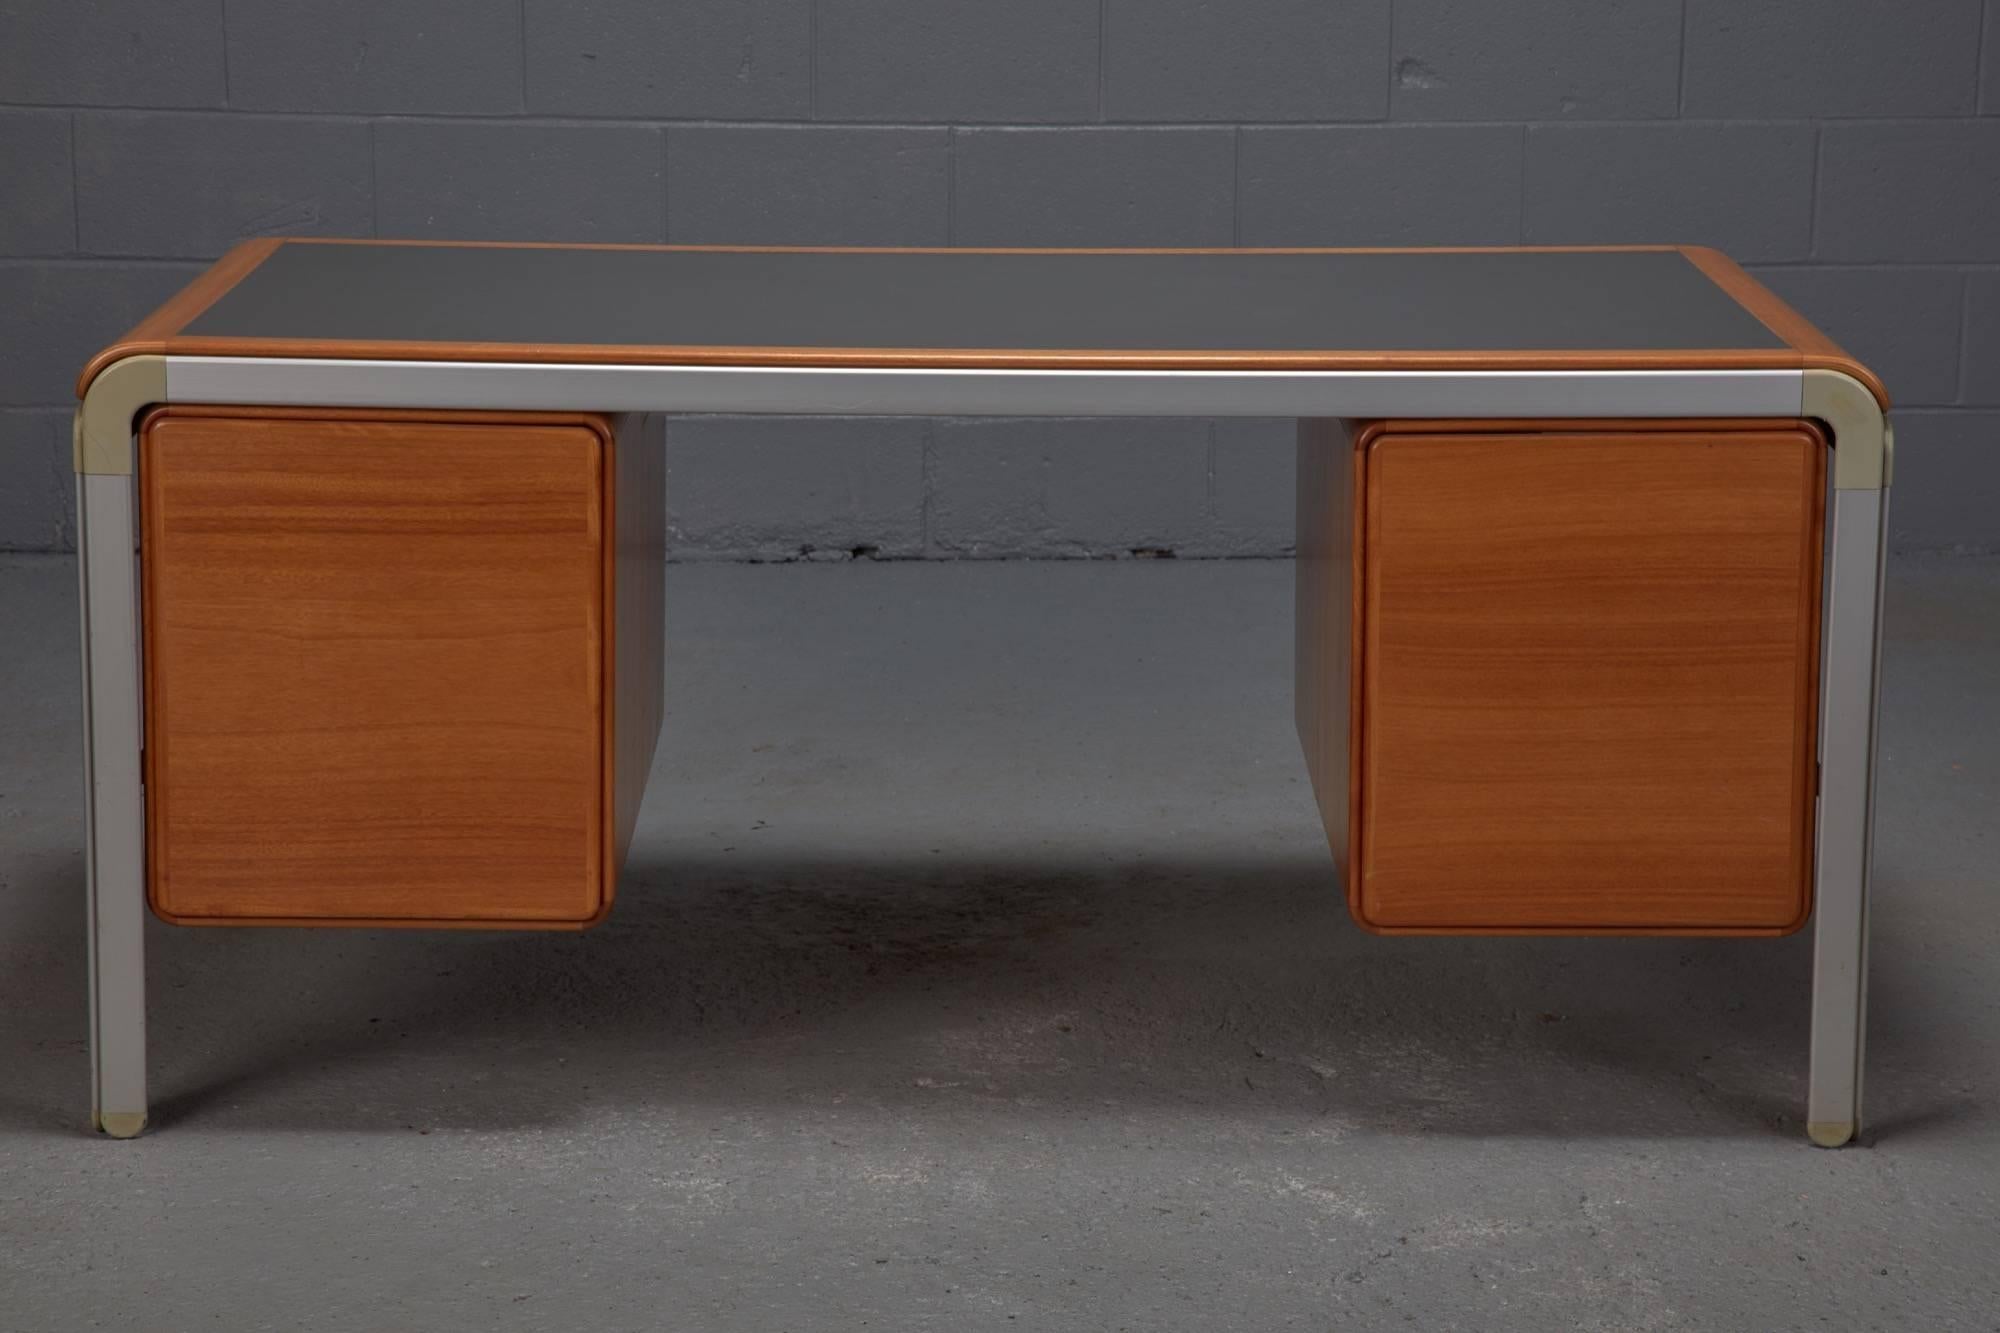 20th Century Custom Desk by Arne Jacobsen for Fritz Hansen for the Danish National Bank